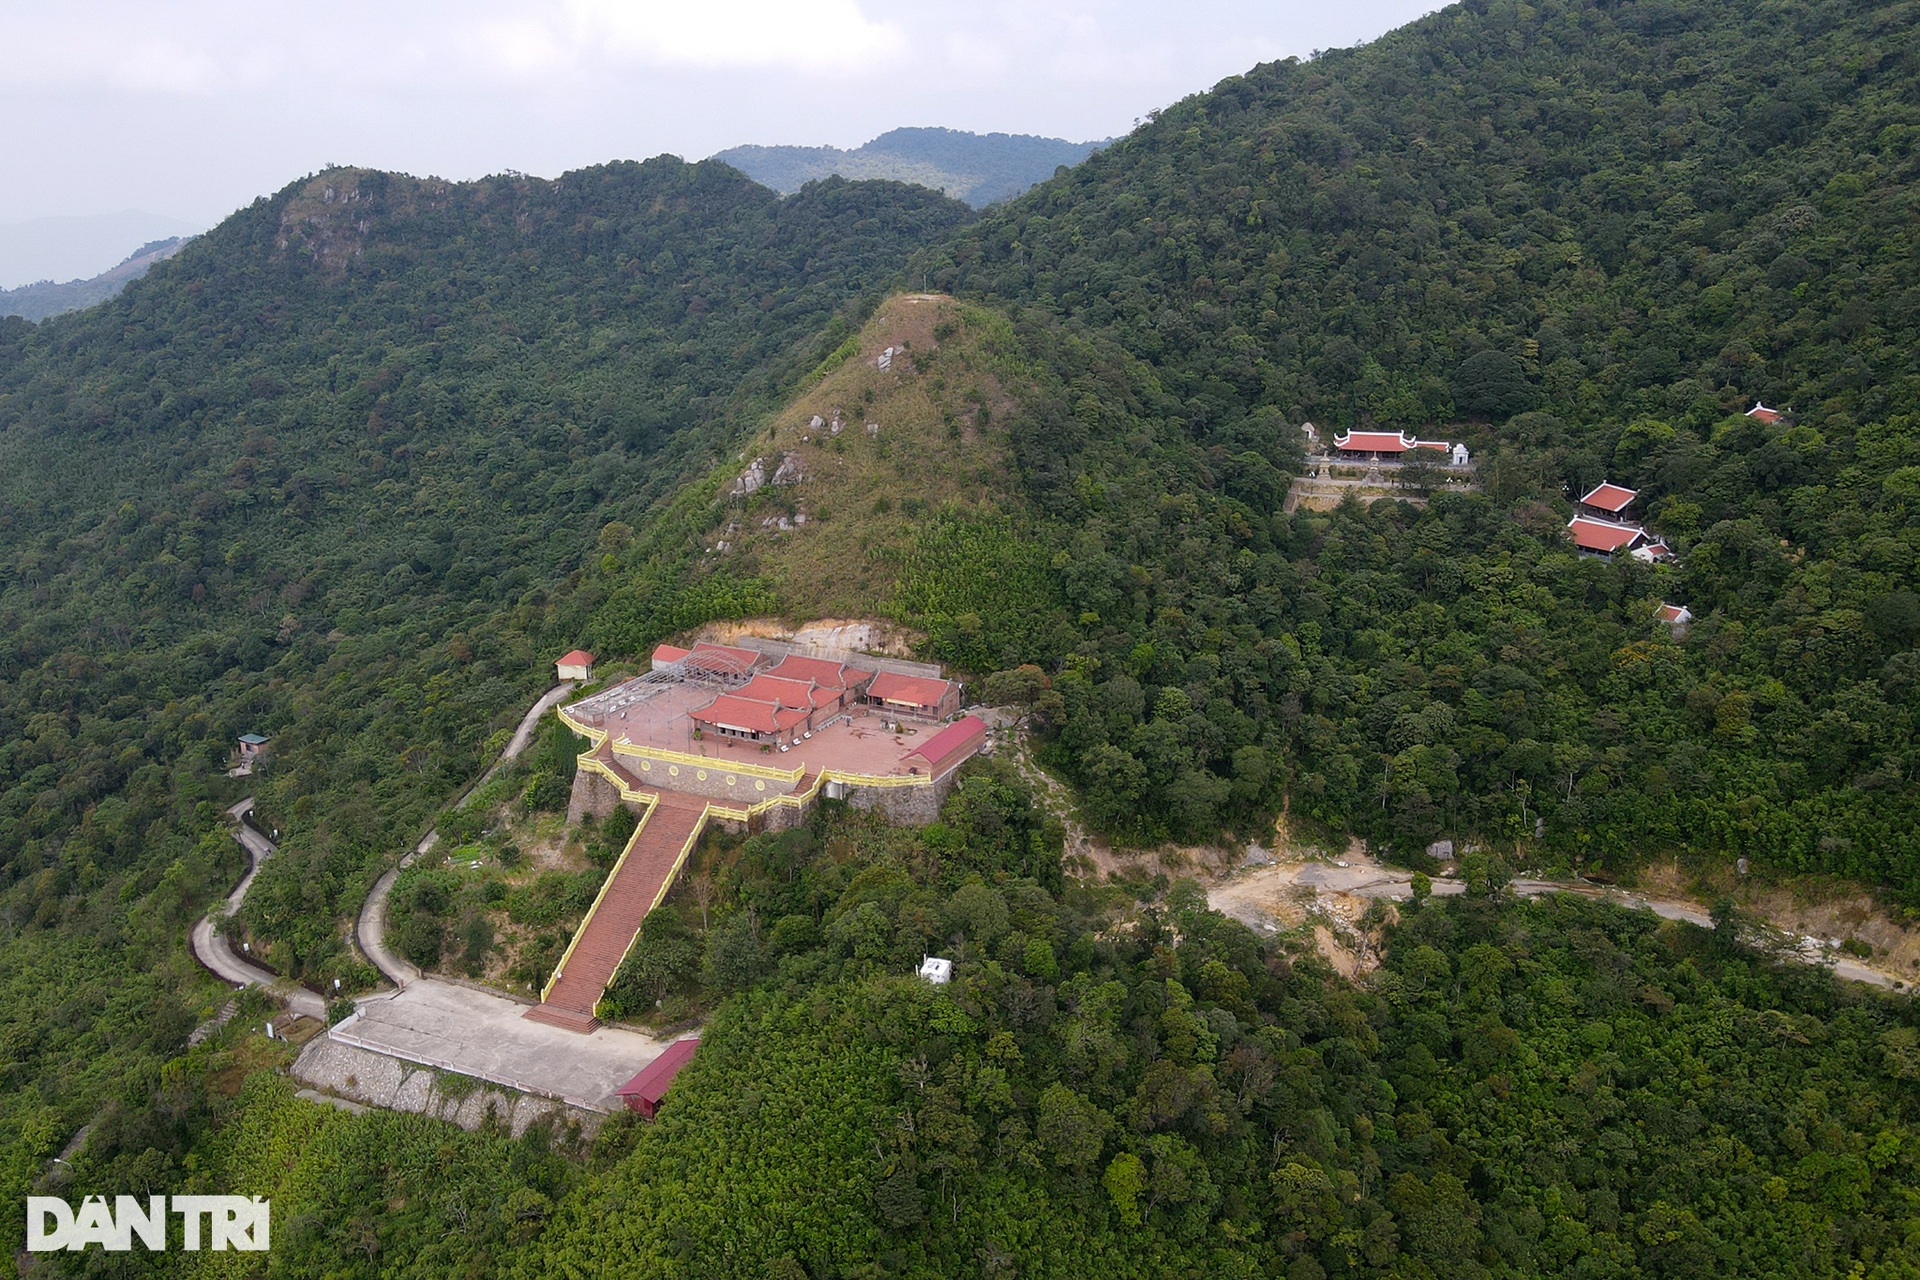 Chiêm ngưỡng ngôi chùa cổ cheo leo trên đỉnh núi ở Quảng Ninh - 1